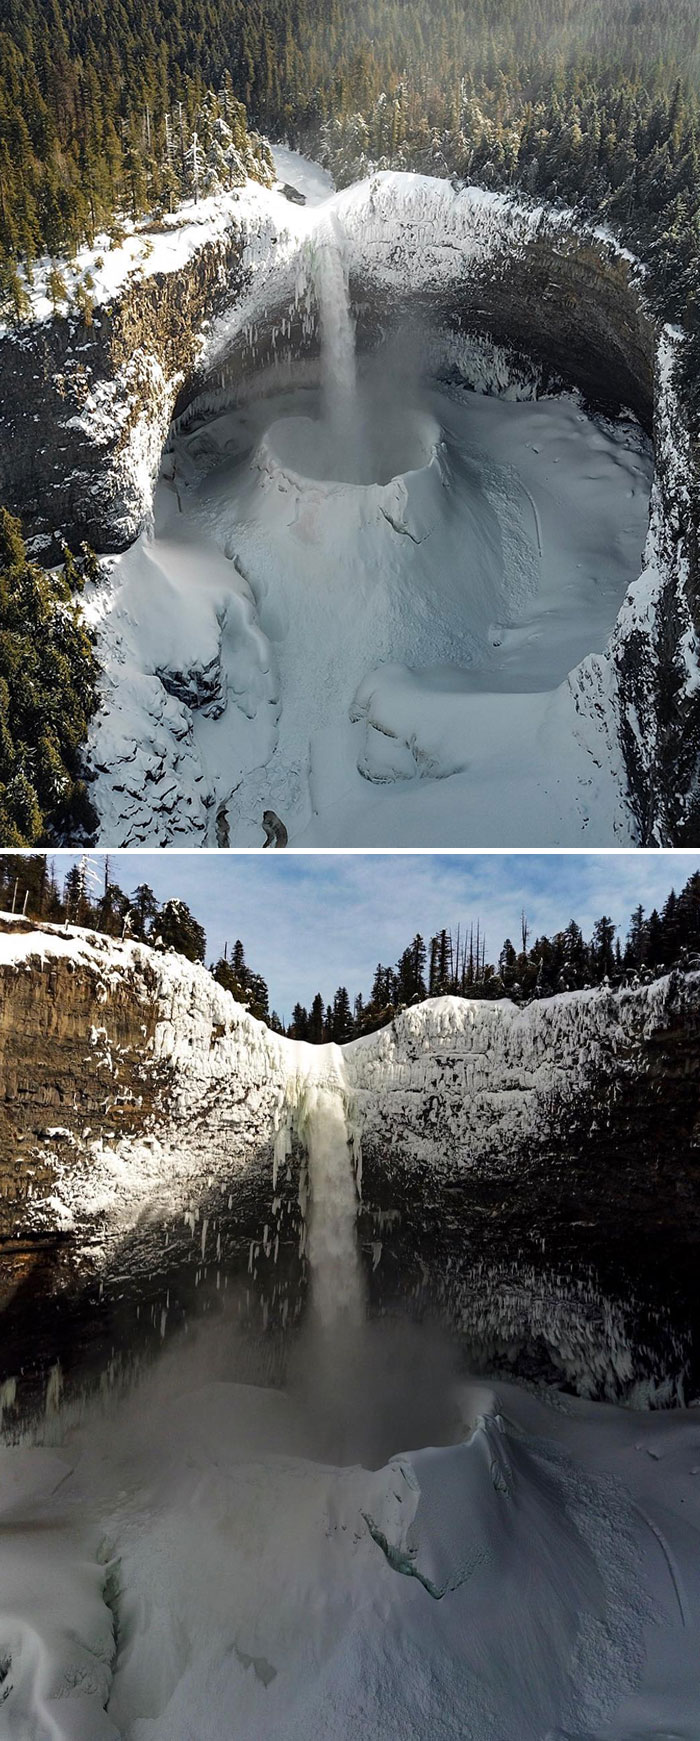 Las temperaturas de congelación crean el entorno perfecto para que el agua en caída libre forme un enorme "cráter de hielo" en el fondo de las cataratas